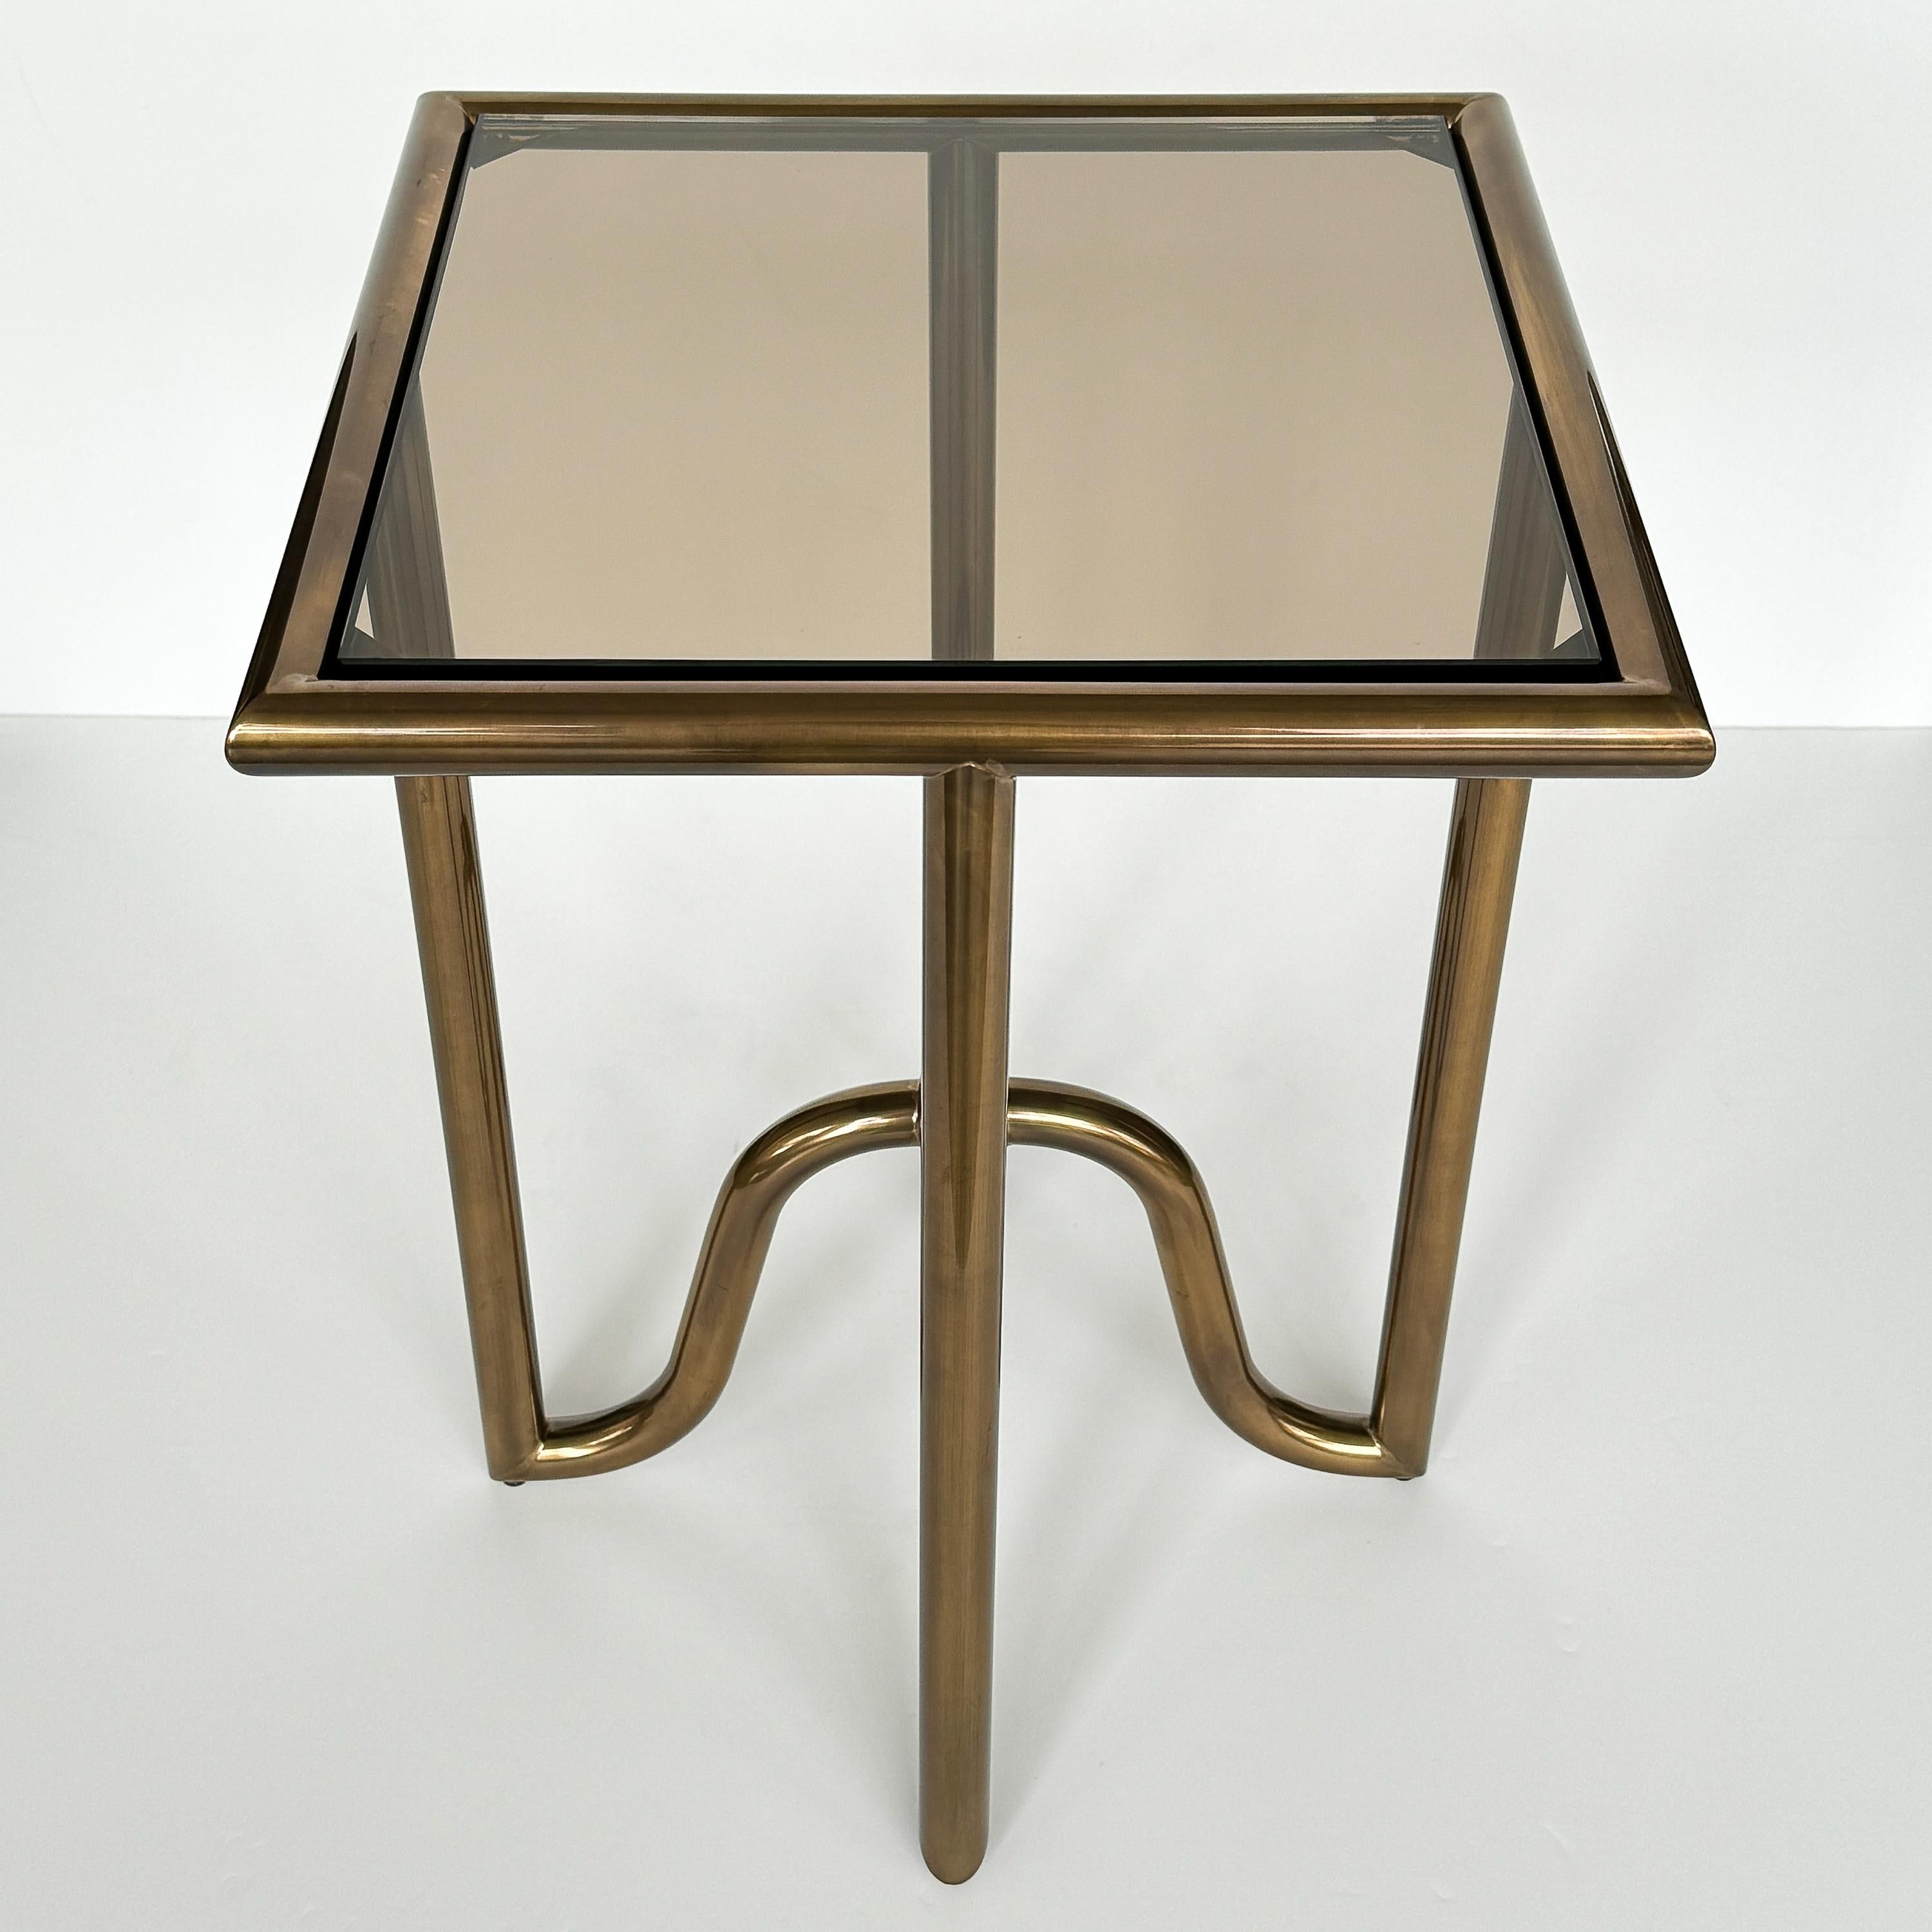 Wir präsentieren den Laura Kirar Bronze Lien Tray Beistelltisch für Baker Furniture, USA ca. Anfang des 21. Dieses exquisite Stück verfügt über eine glänzende röhrenförmige Messingstruktur mit einem Durchmesser von 1